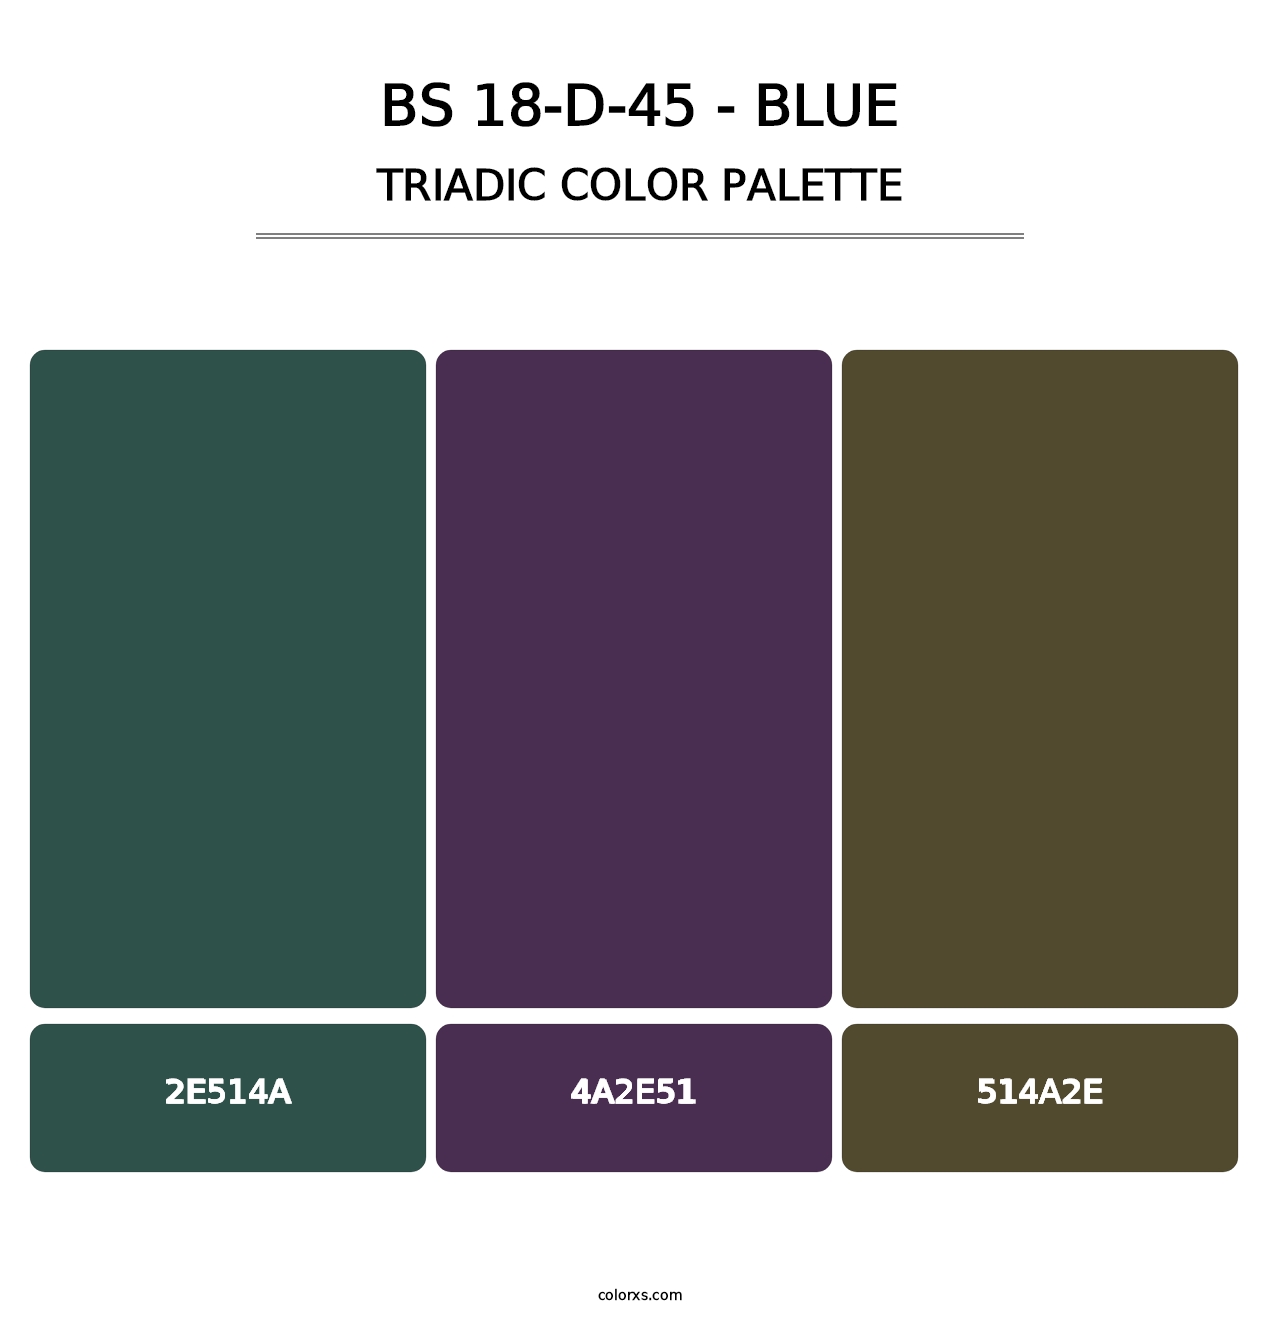 BS 18-D-45 - Blue - Triadic Color Palette